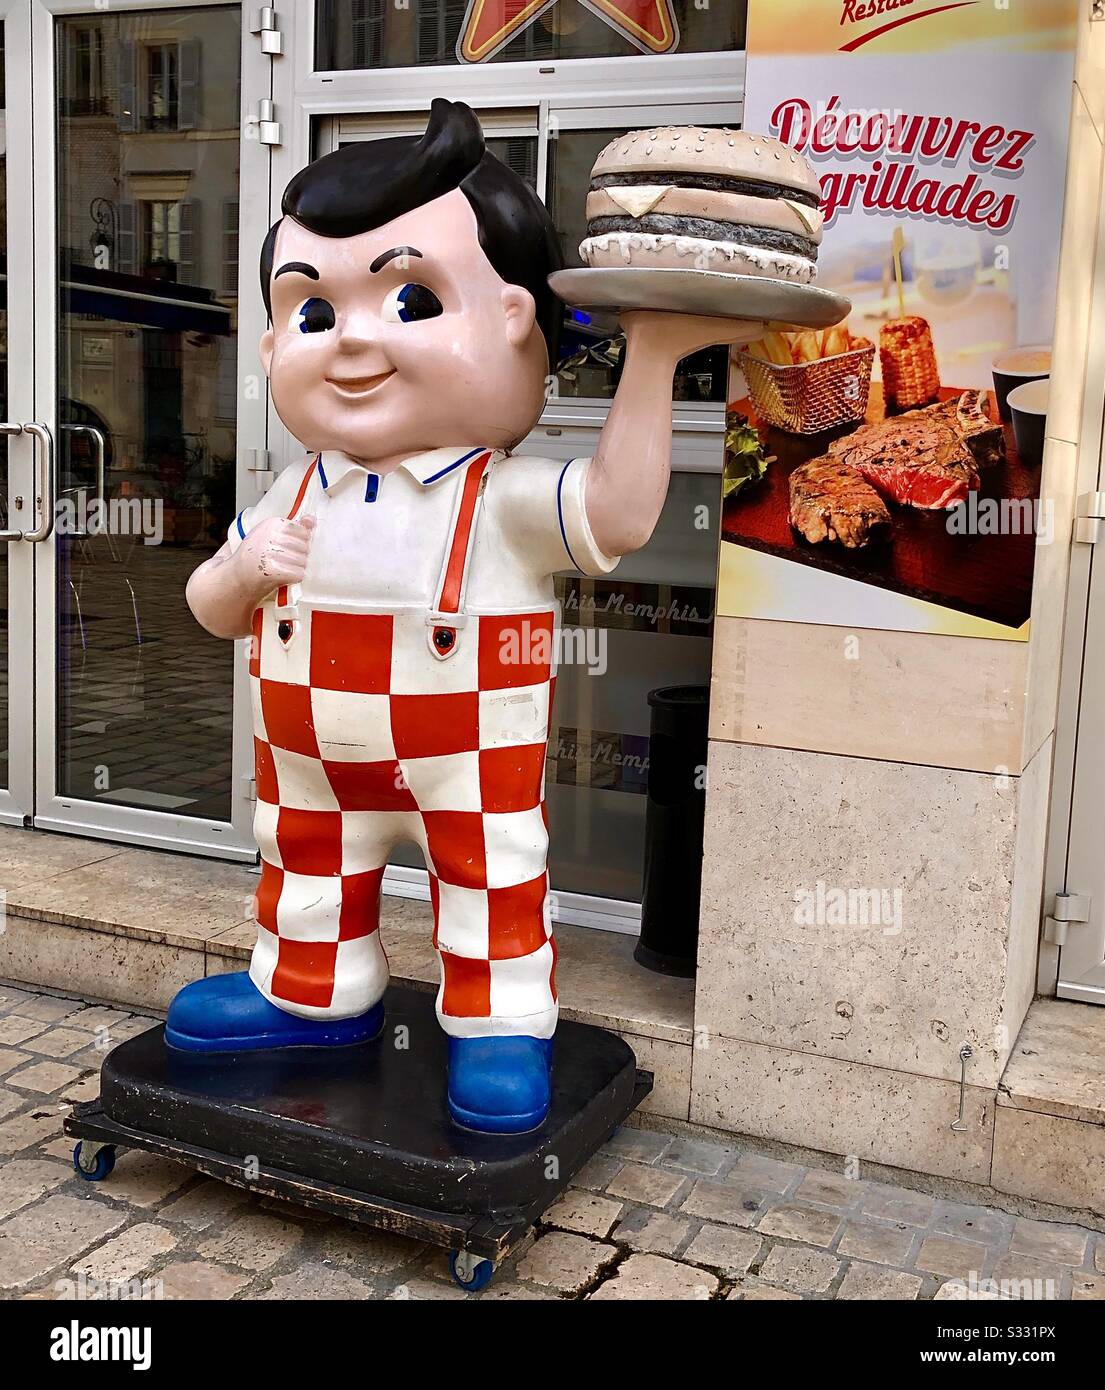 Lustige Figur, die Hamburger Restaurant in Orléans, Frankreich, wirbt. Stockfoto